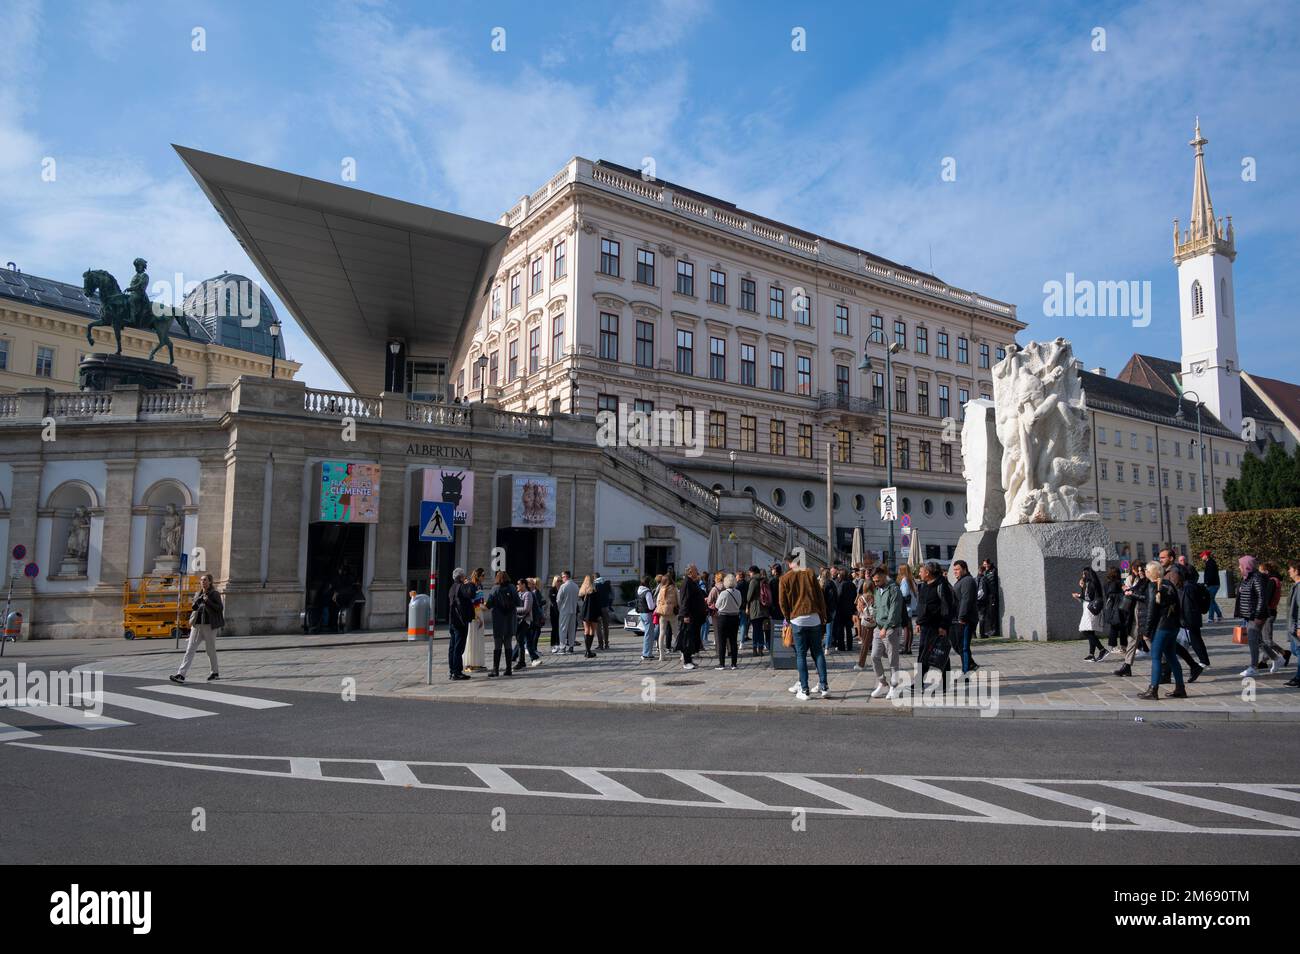 Vue sur les touristes à l'extérieur du musée Albertina sur la place centrale principale de Vienne, Autriche. Banque D'Images